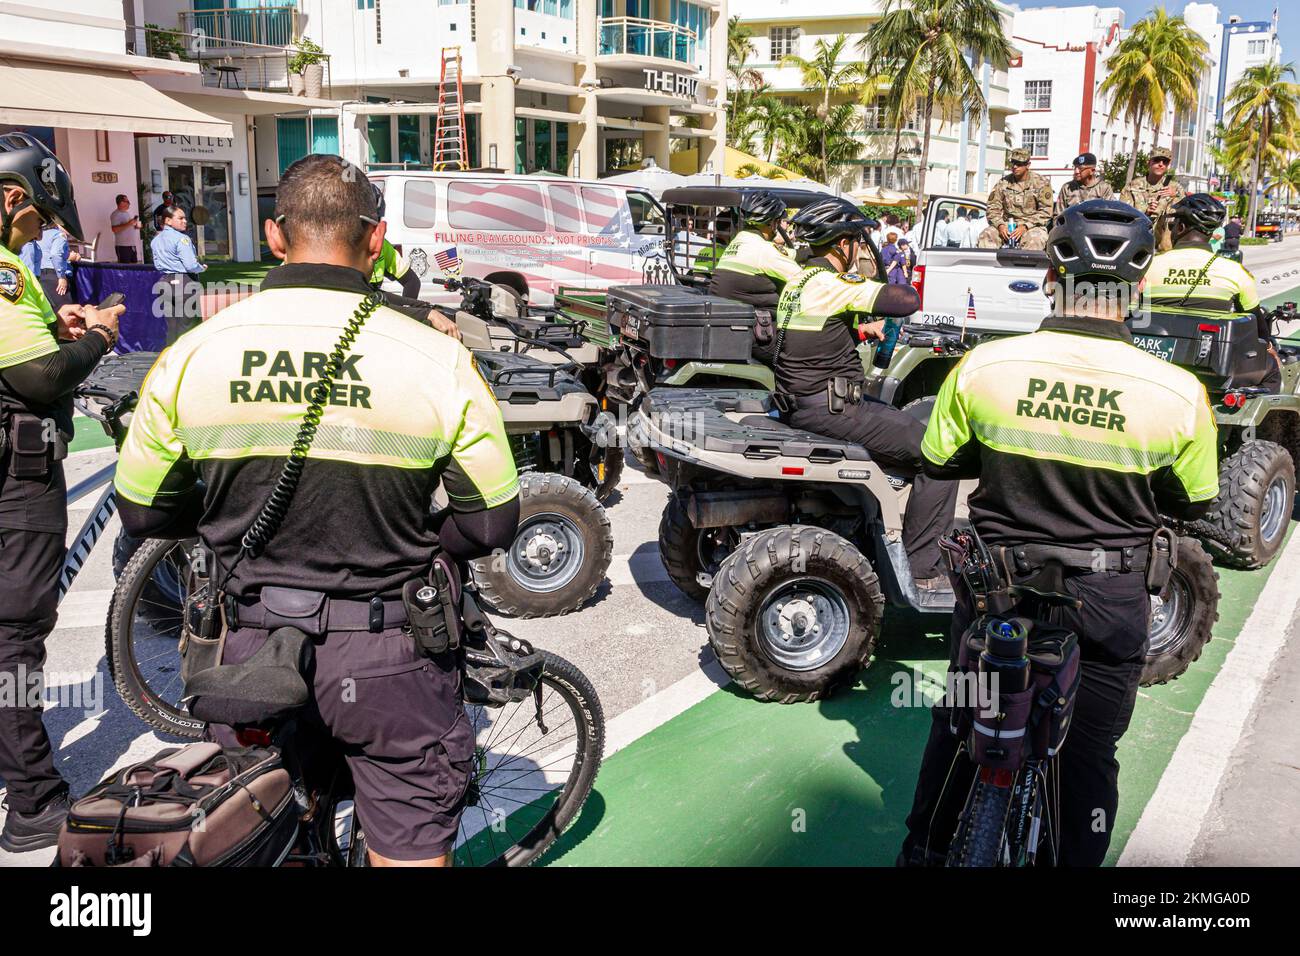 Miami Beach Floride, South Beach Ocean Drive Veterans Day Parade événement annuel, Park Ranger Rangers Riders VTT VTT vélo, homme homme homme adu Banque D'Images